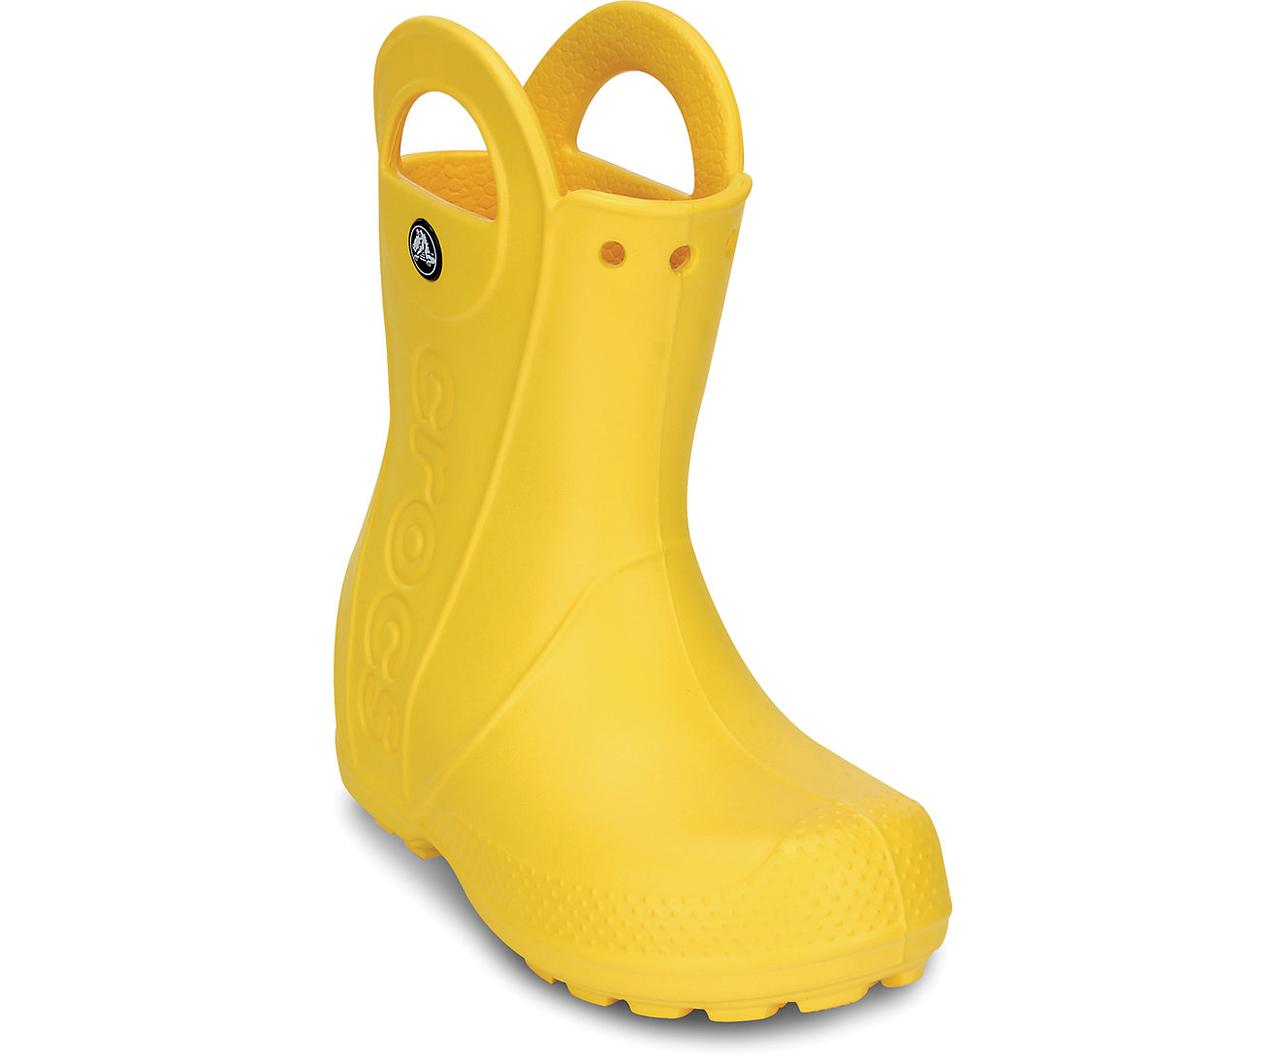 Чоботи гумові дитячі дощовики Крокси з ручками / Crocs Kids Handle It Rain Boot (12803), Жовті